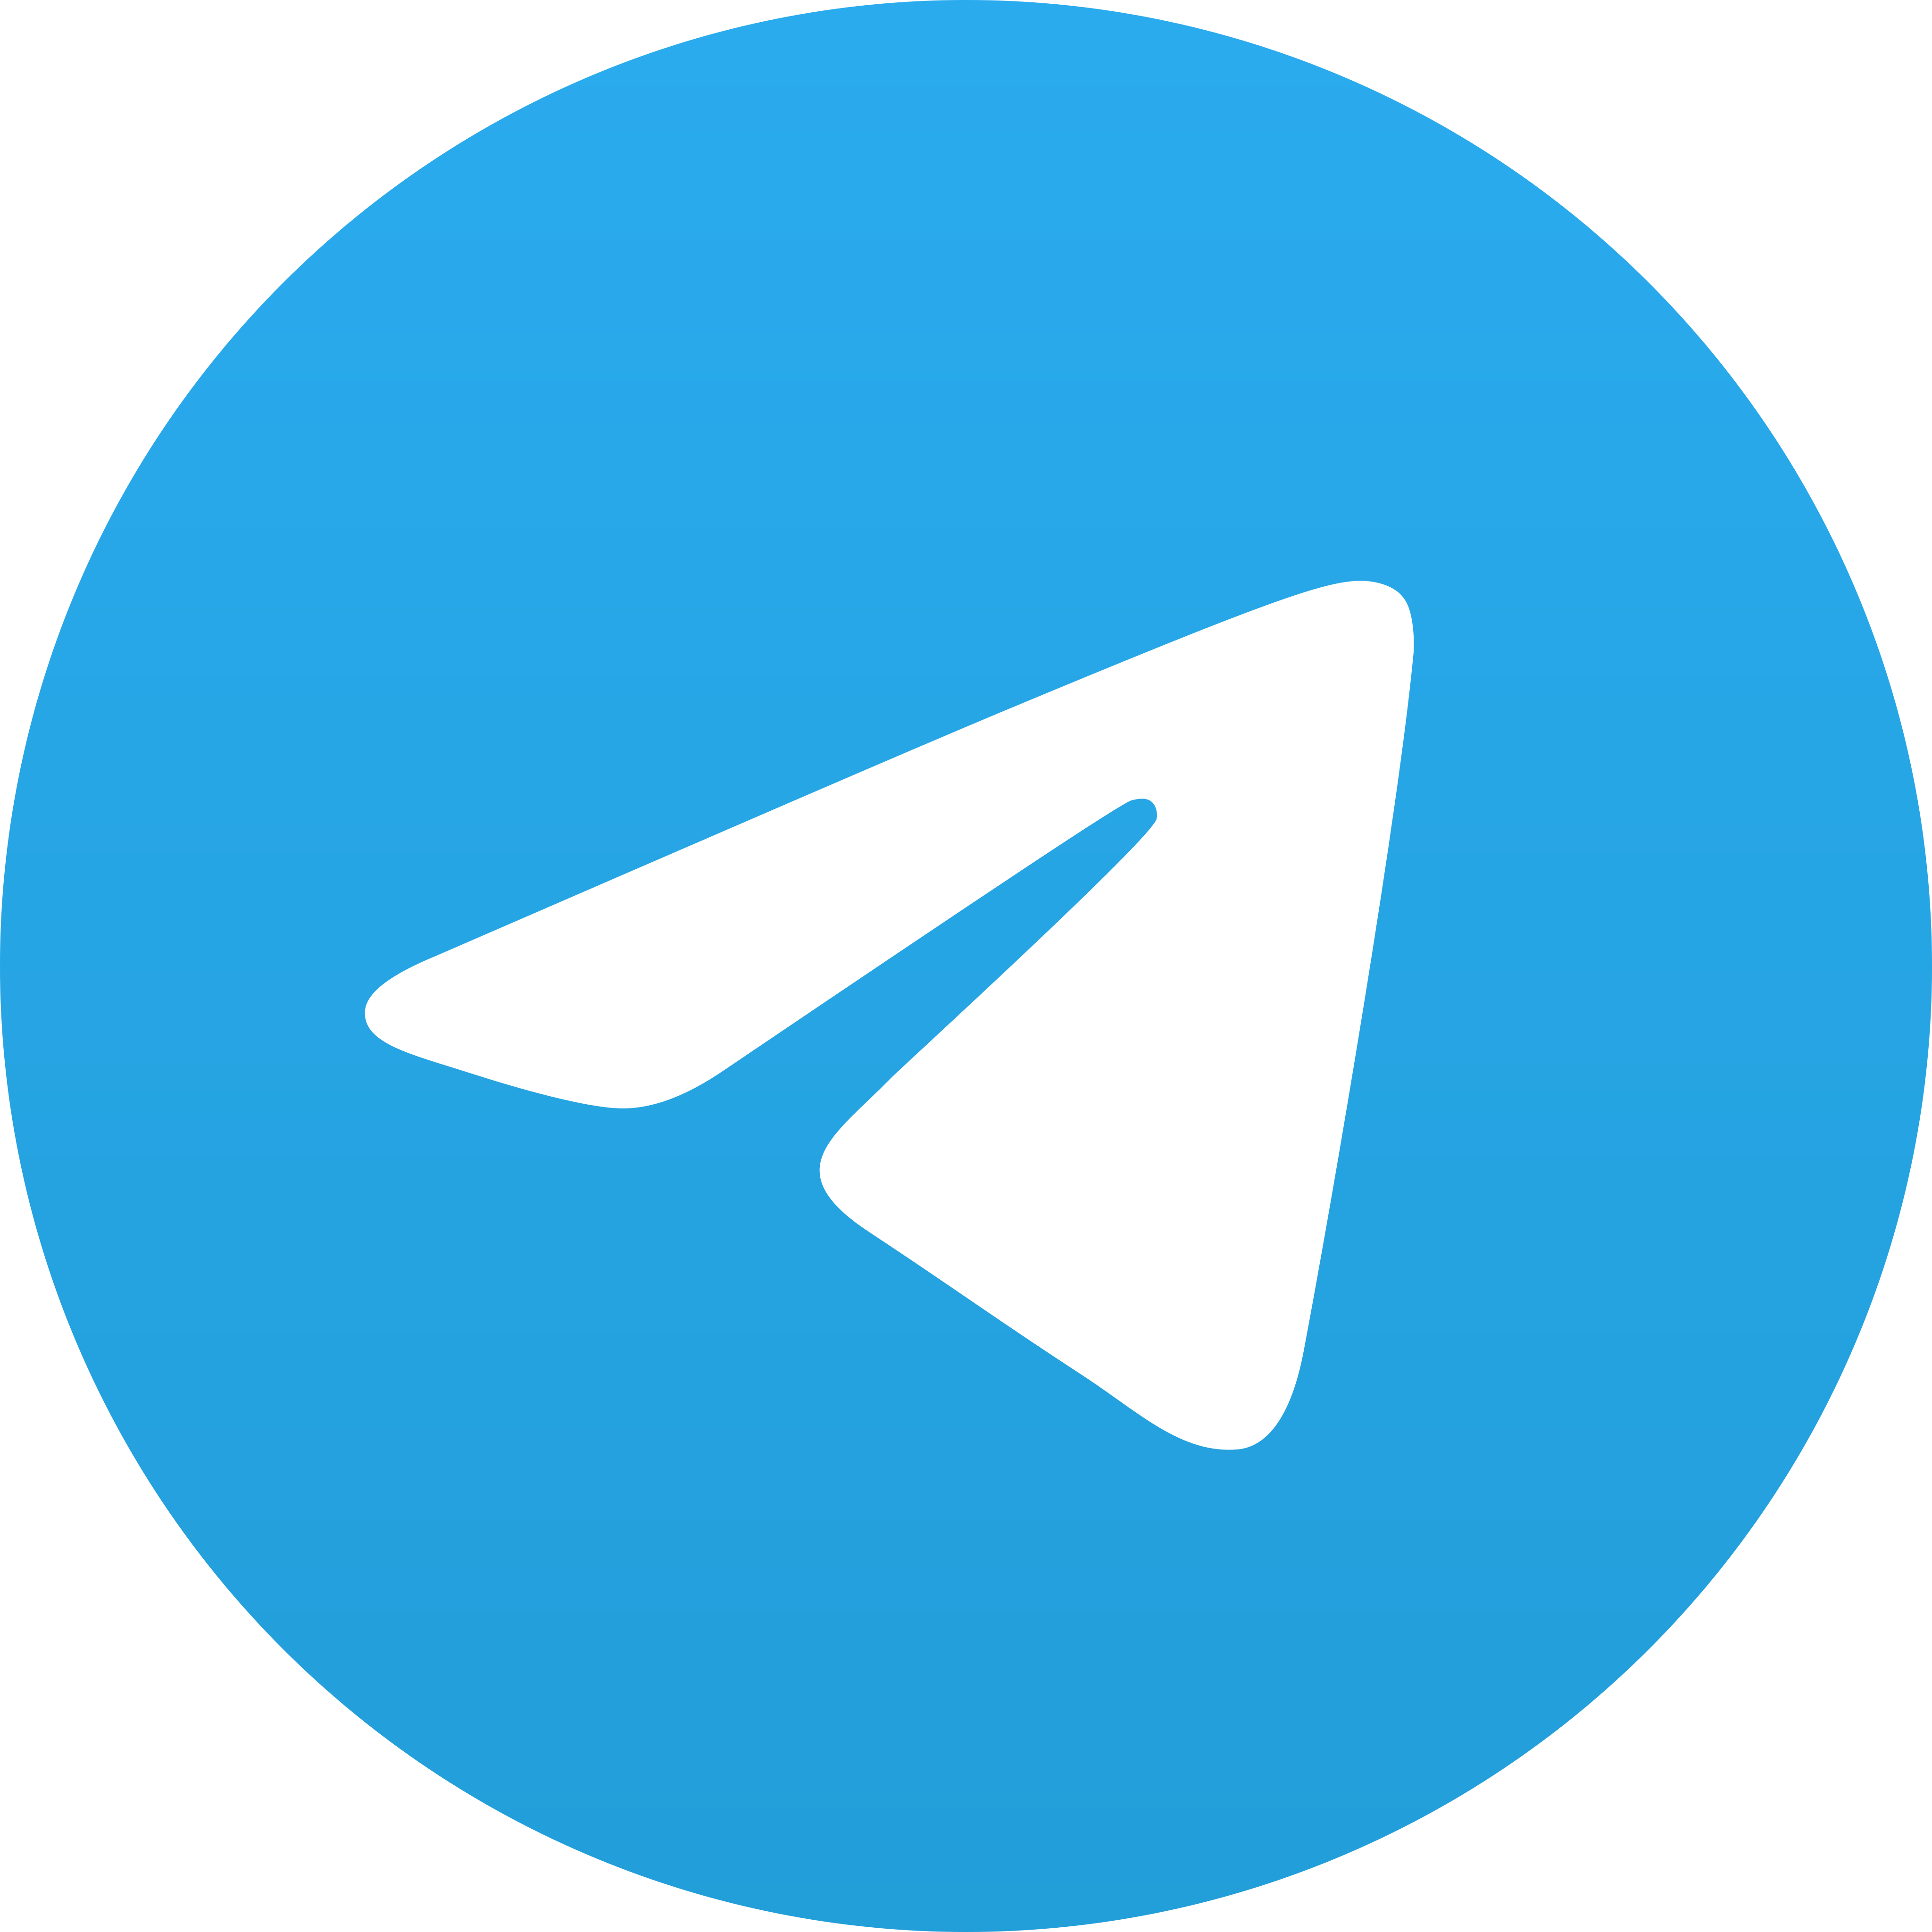 telegram logo 9 - Telegram Logo